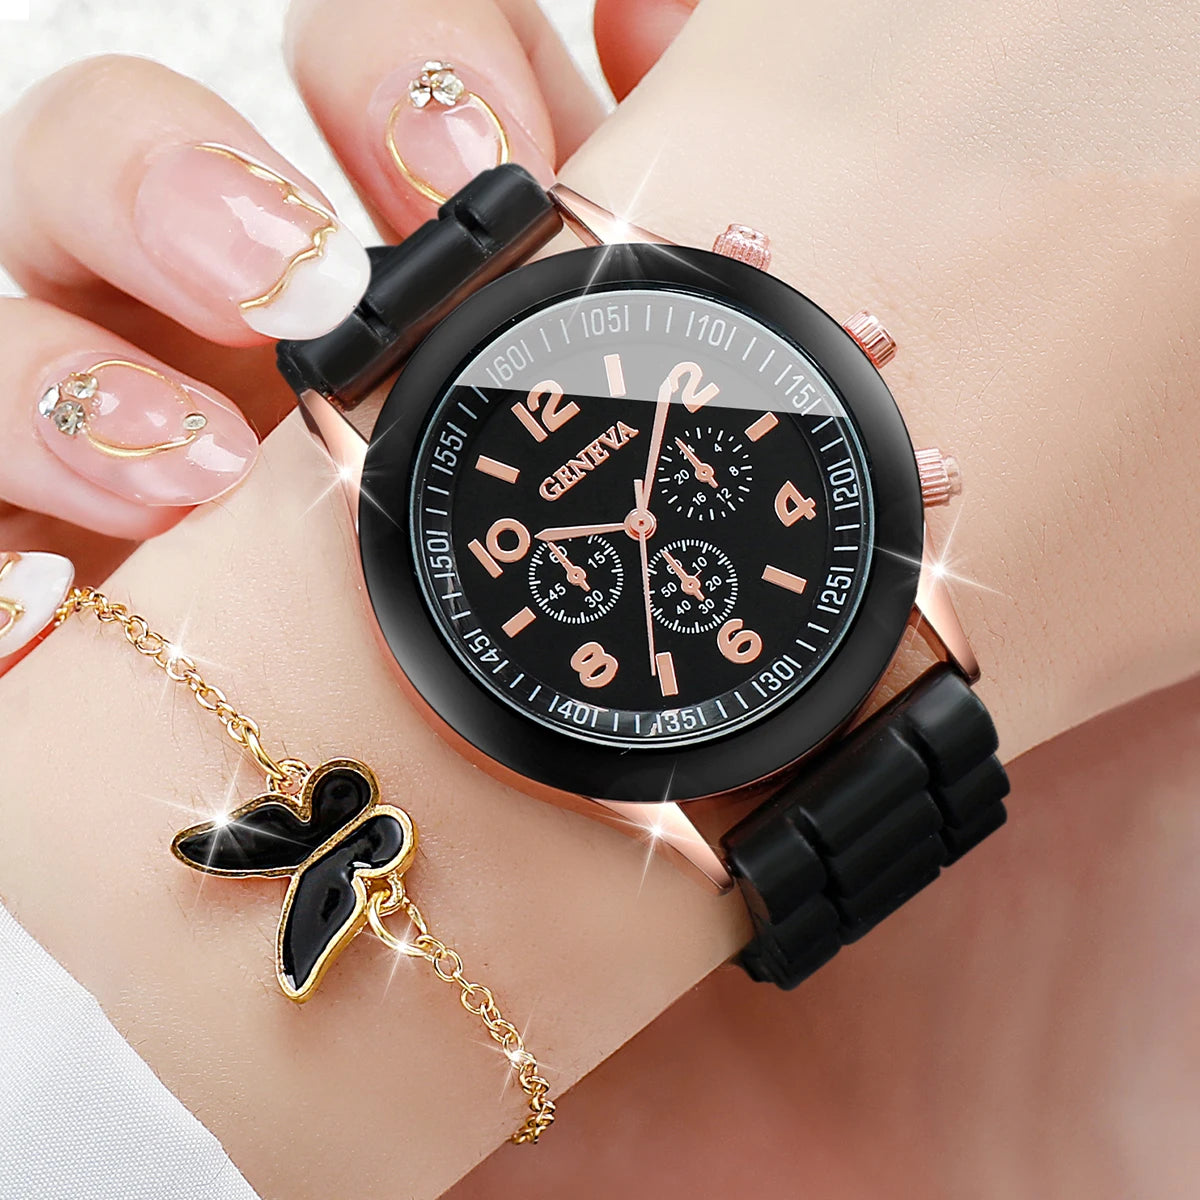 5pcs/Set Geneva Watch Women Fashion Silicone Band Quartz Watch Butterfly Jewelry Set（Without Box）